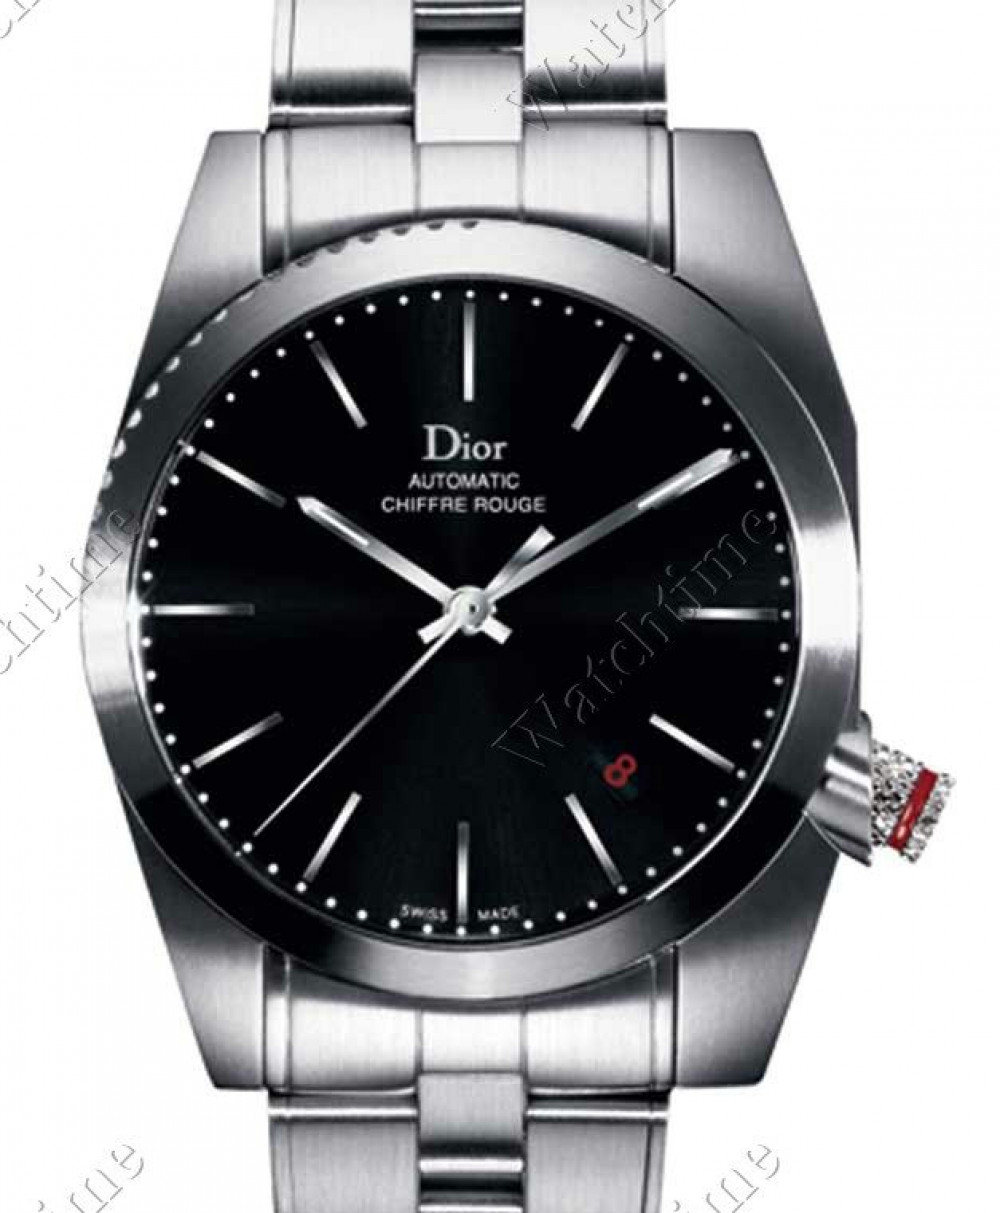 Zegarek firmy Dior, model Chiffre Rouge